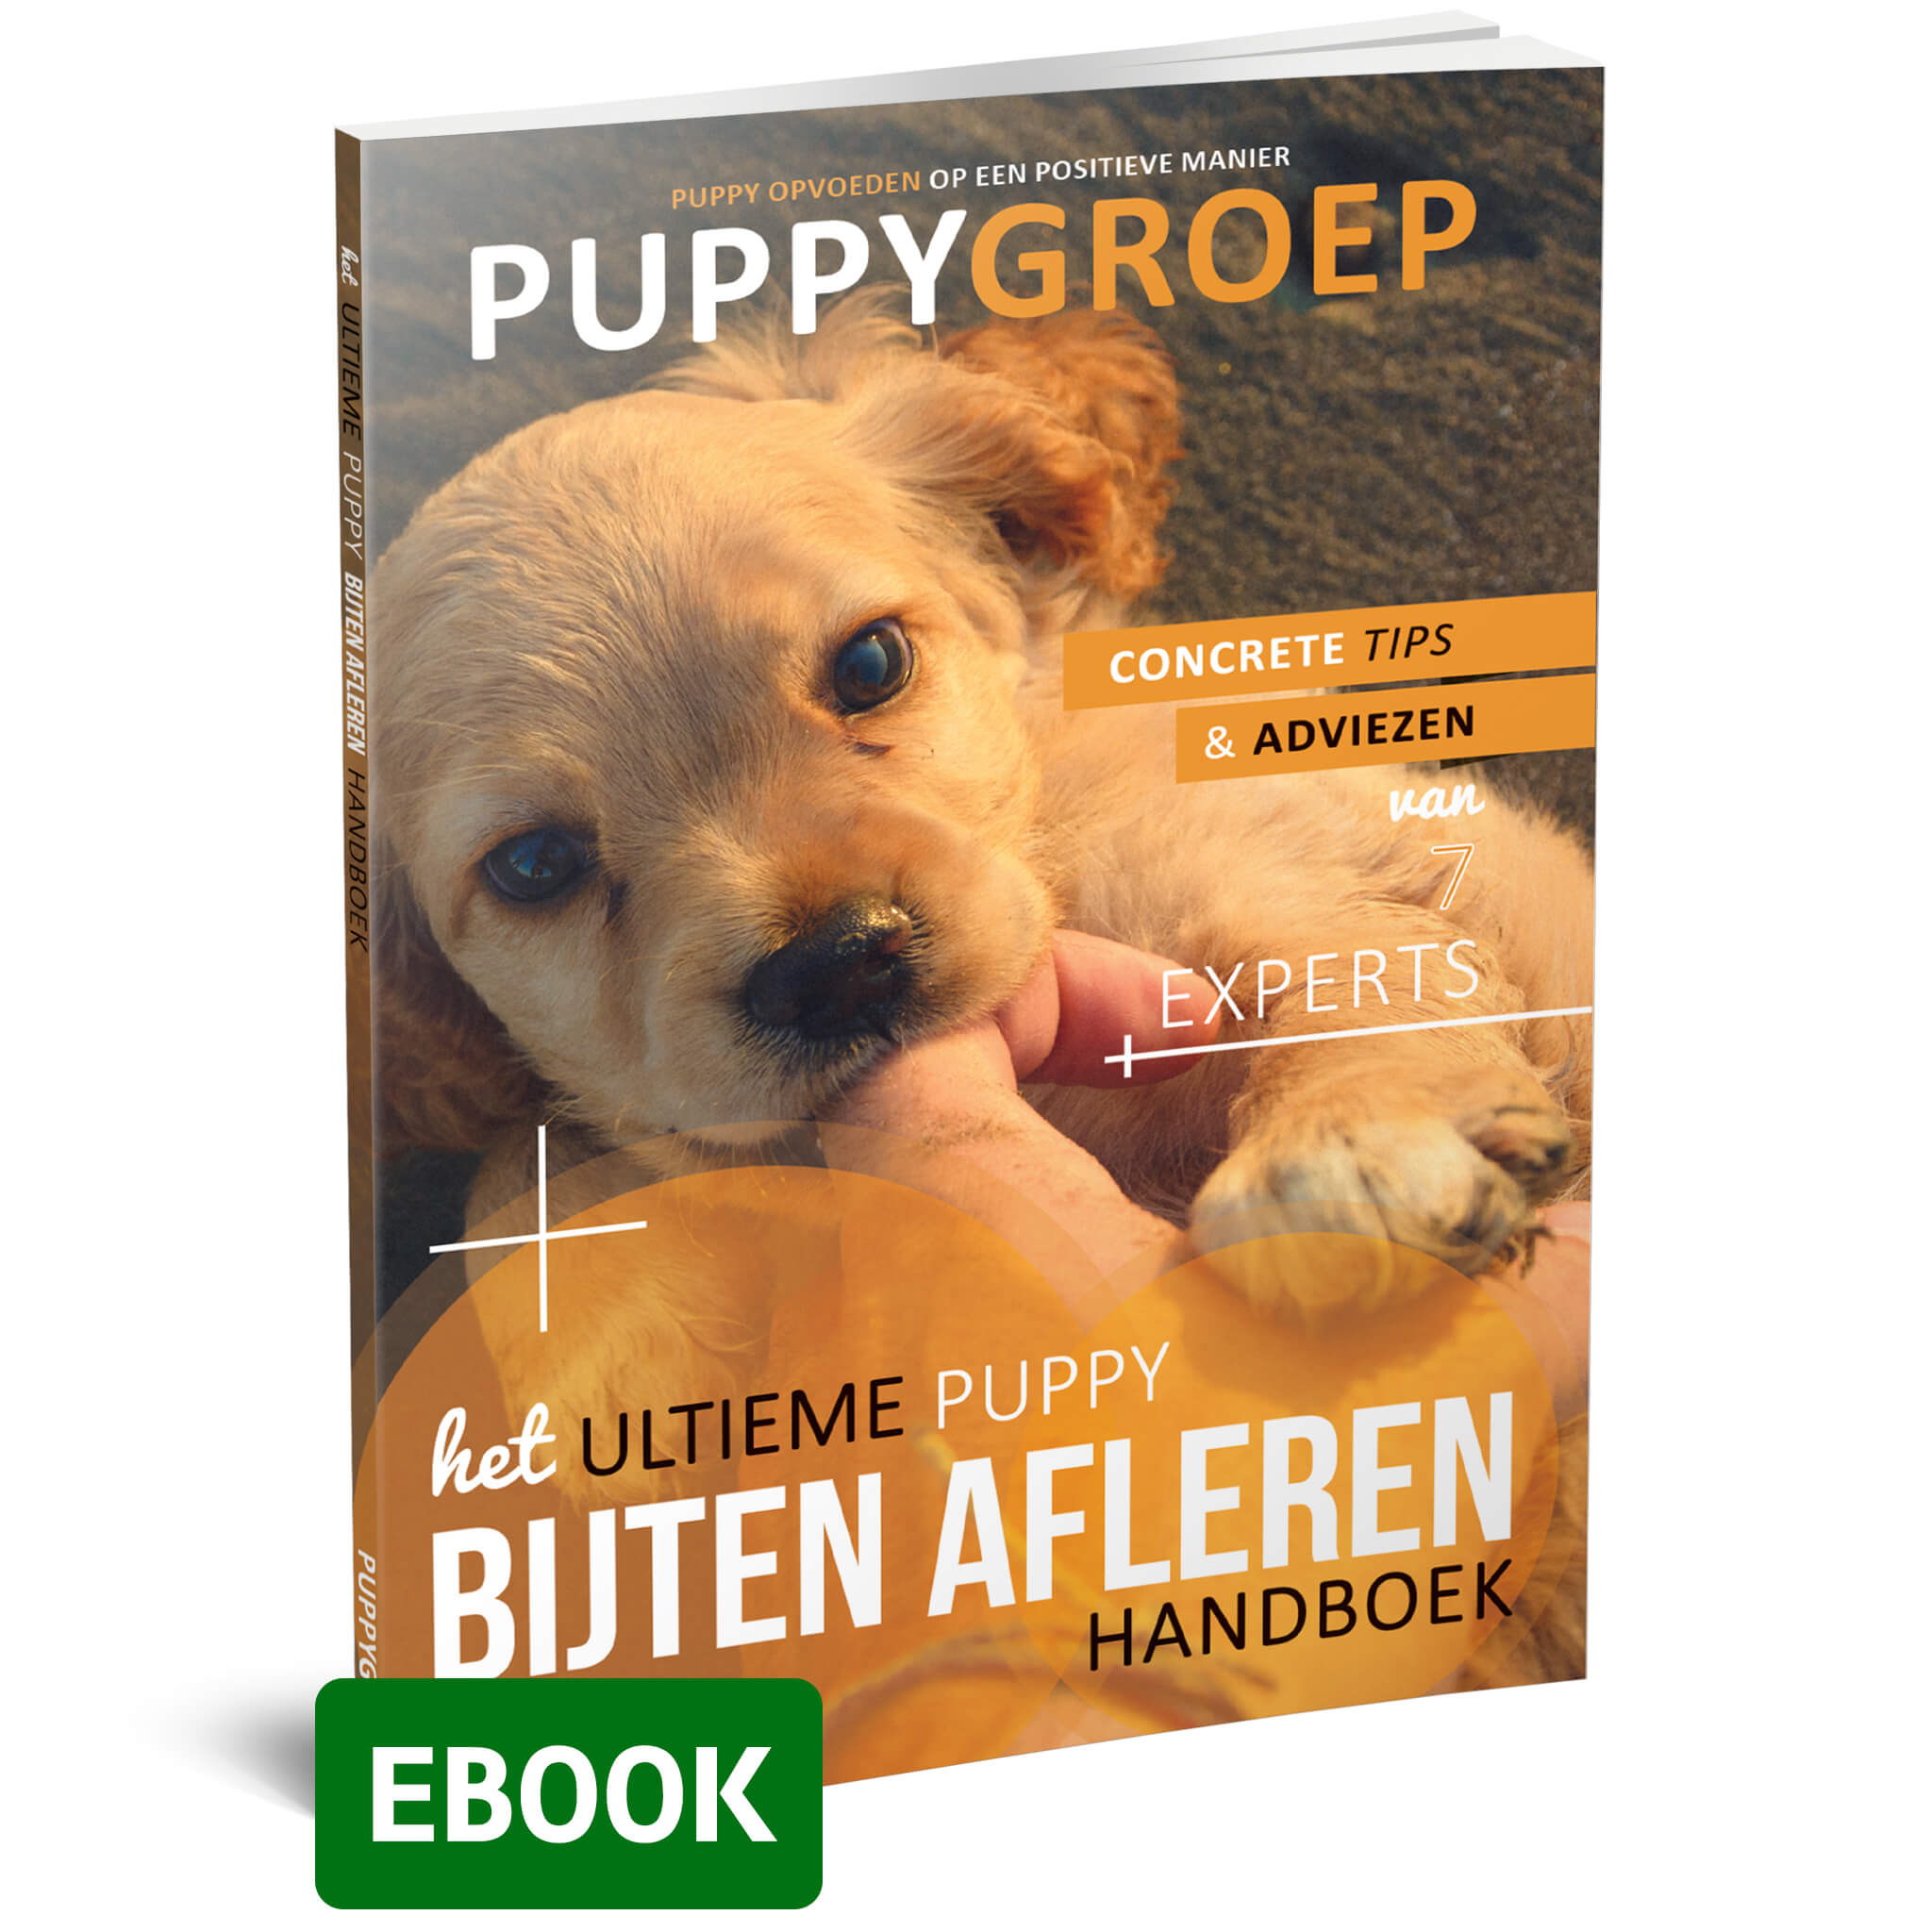 Het Ultieme Puppy Bijten Afleren Handboek (ebook)